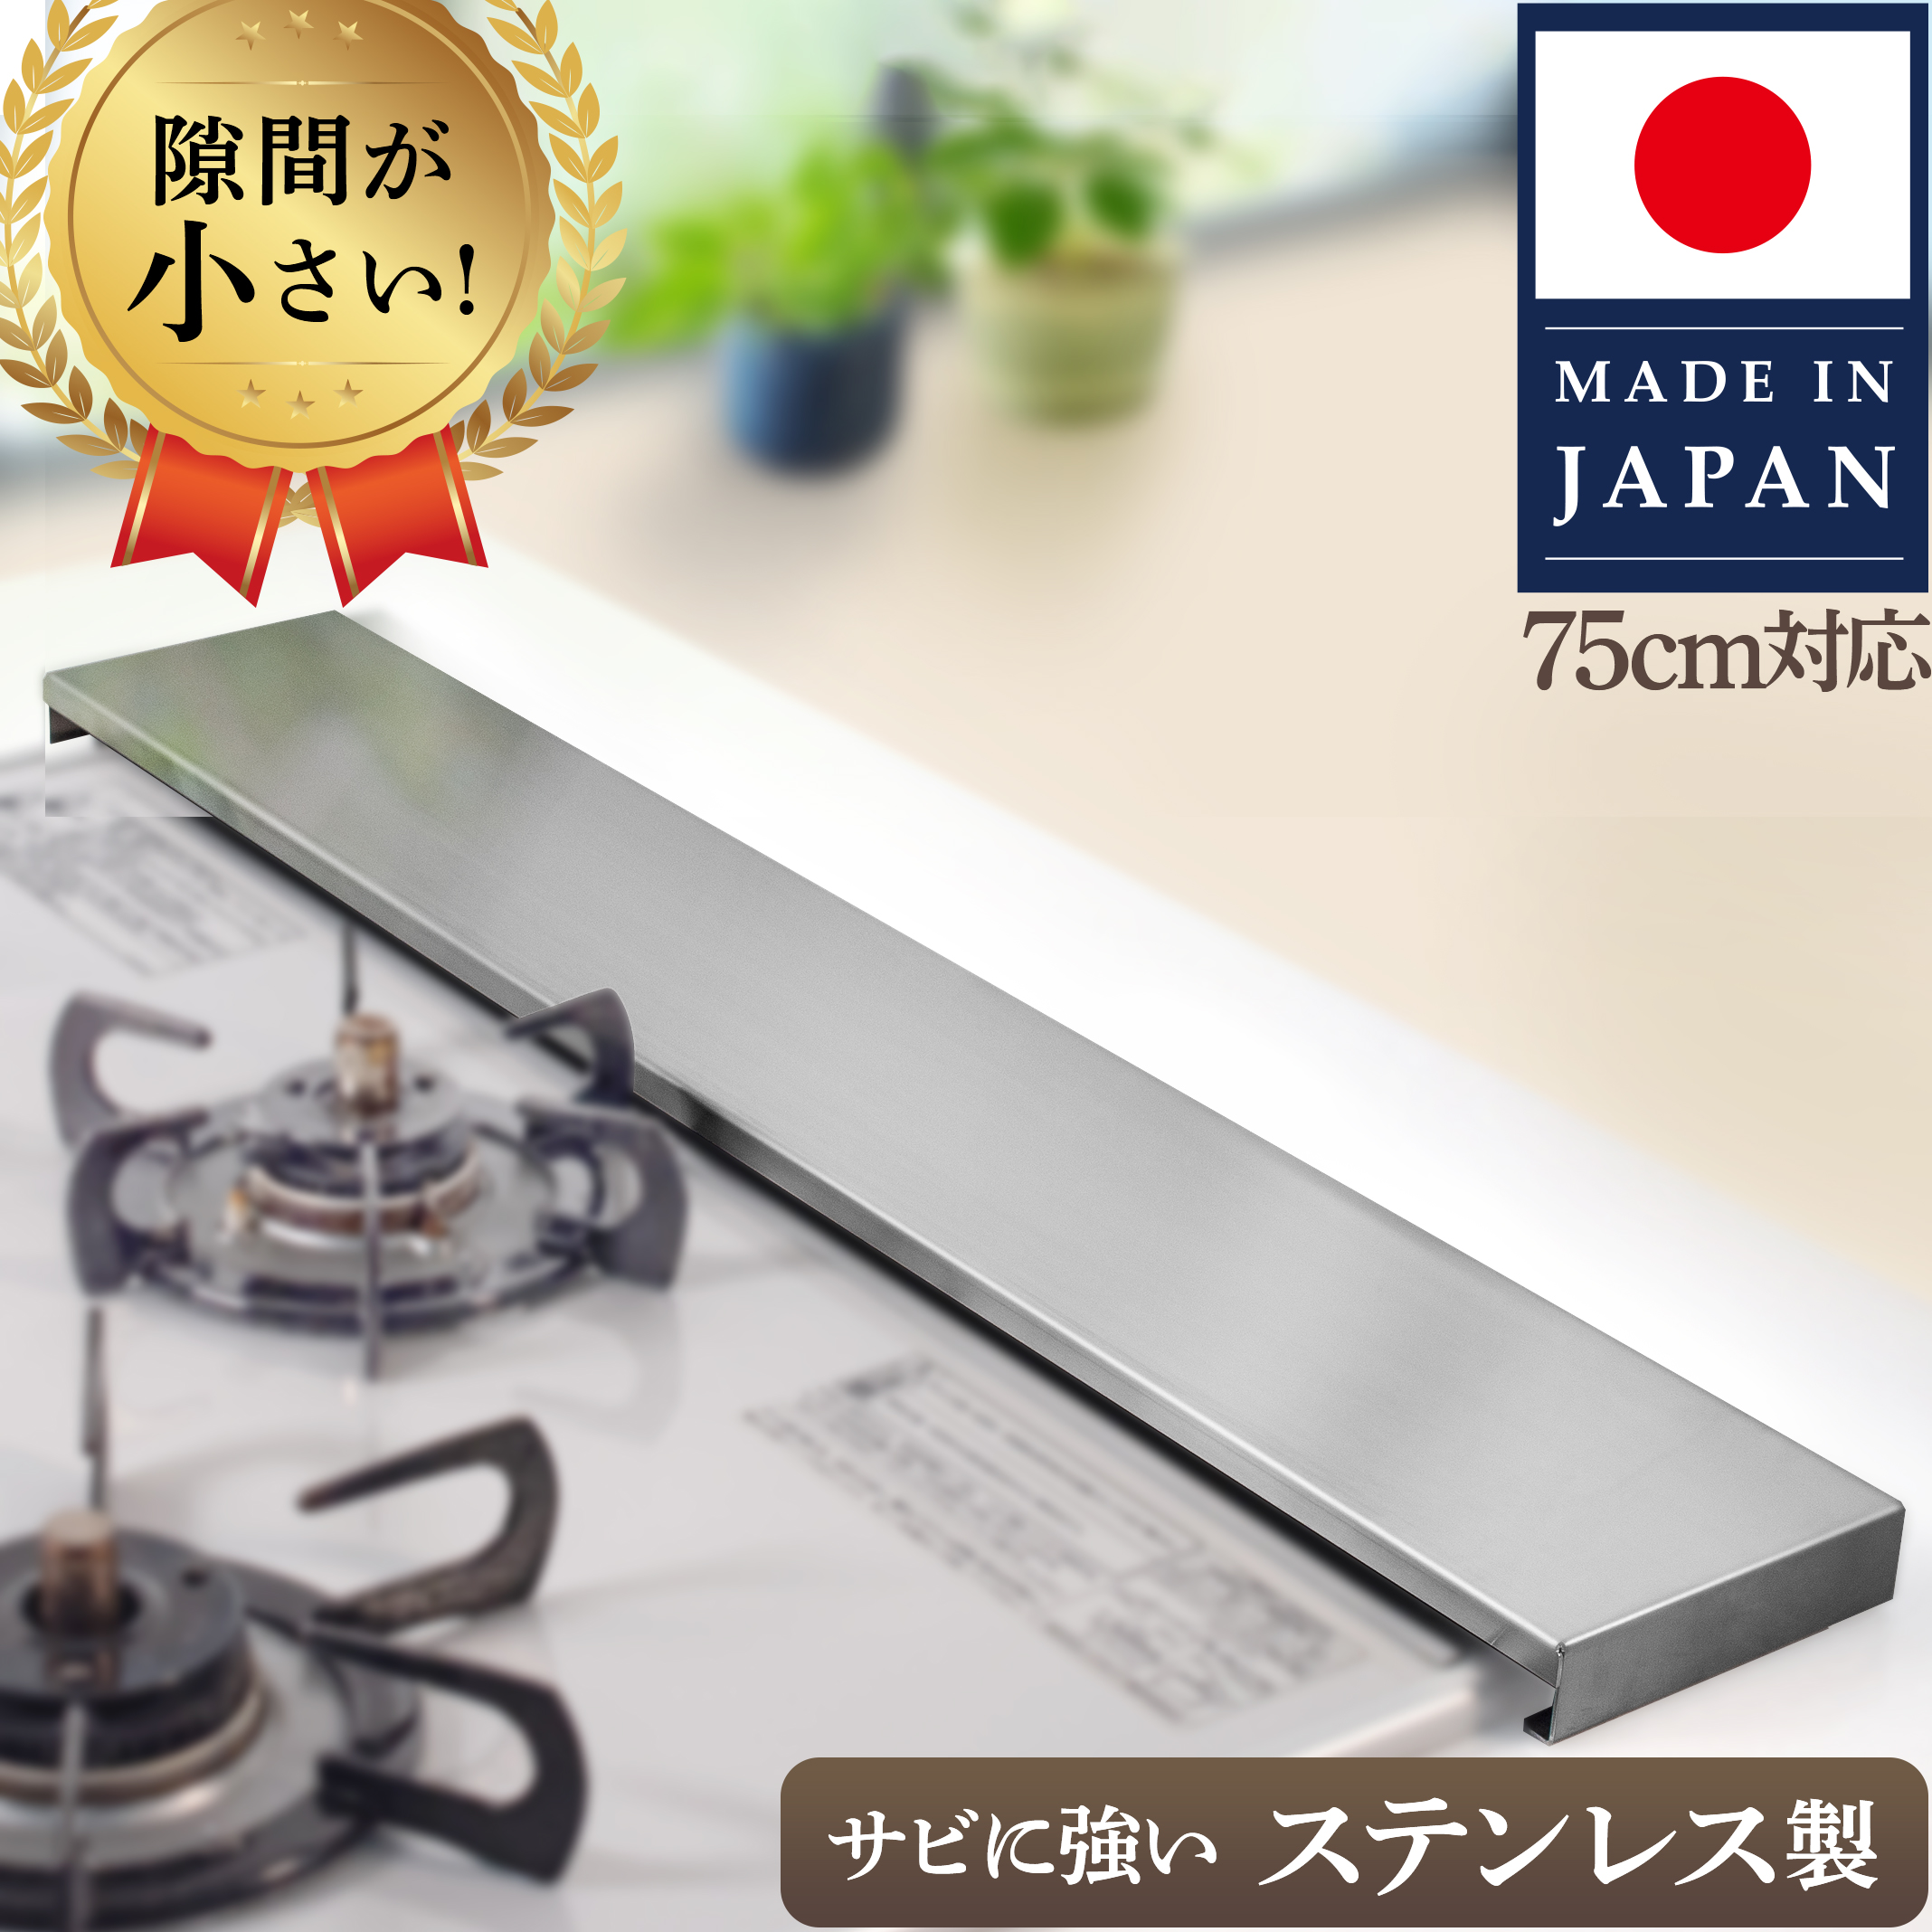 【楽天市場】排気口カバー 信頼の日本製 厚さ1.2mm ステンレス 